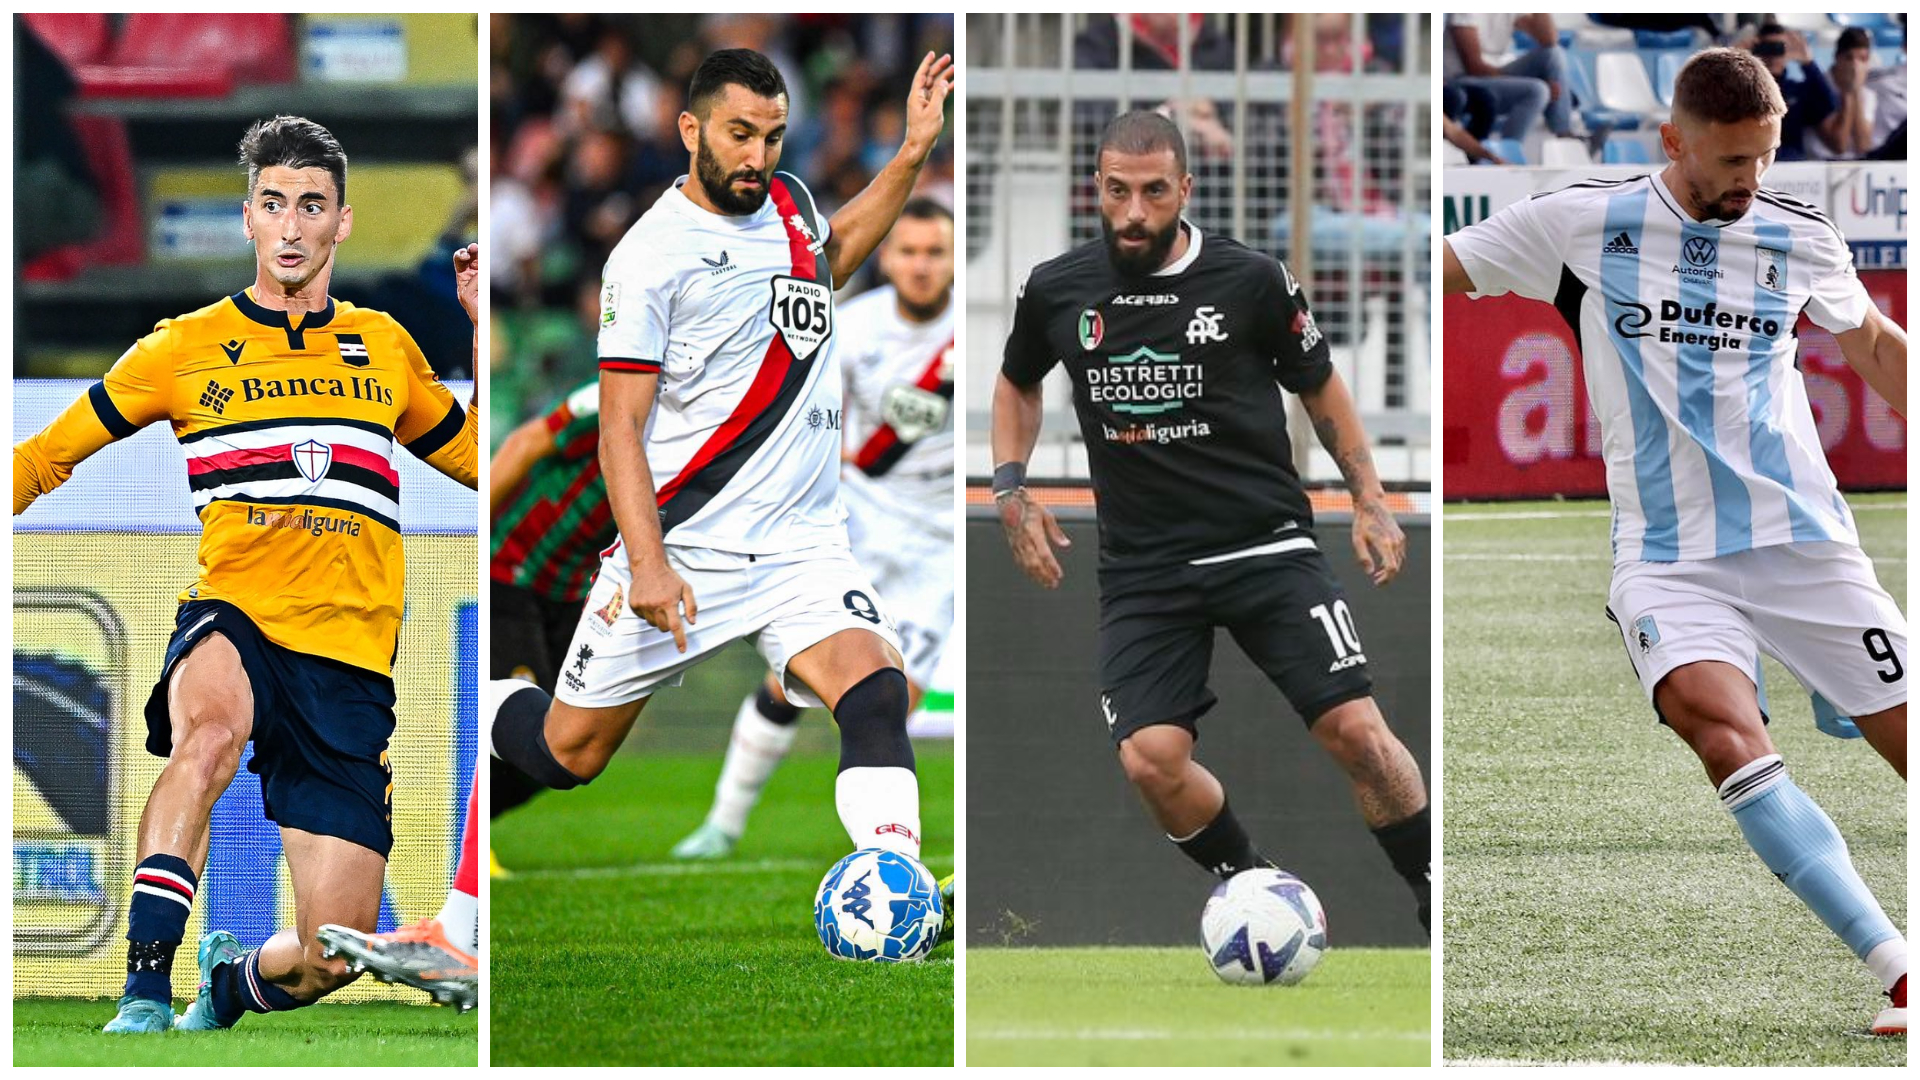 Calcio, tutti i club liguri professionistici sponsorizzati dalla Regione: 'LaMiaLiguria' anche sulle maglie di Genoa ed Entella